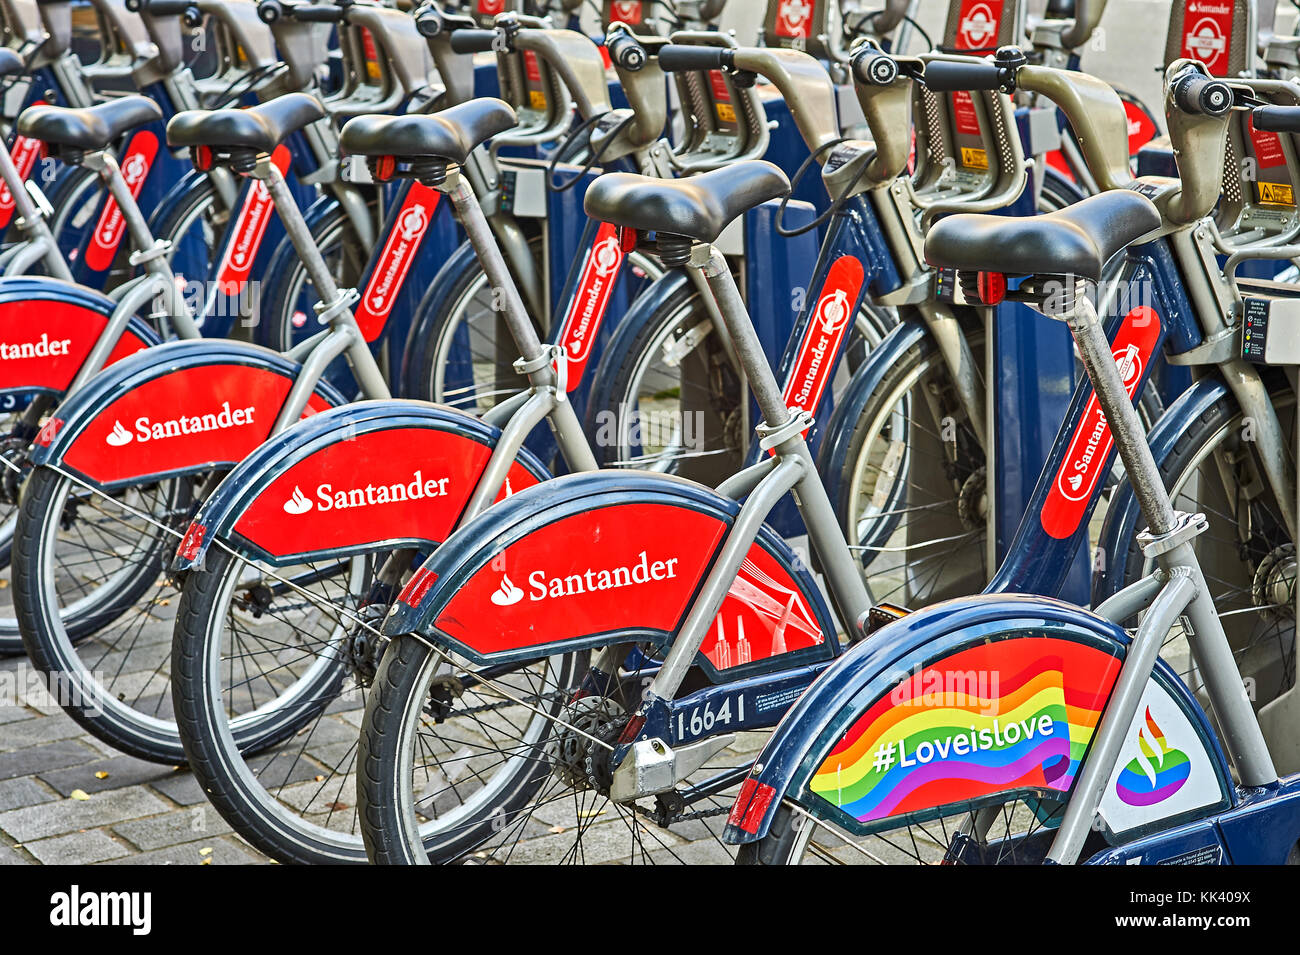 Santander biciclette a noleggio presso una docking station nel centro di Londra Foto Stock